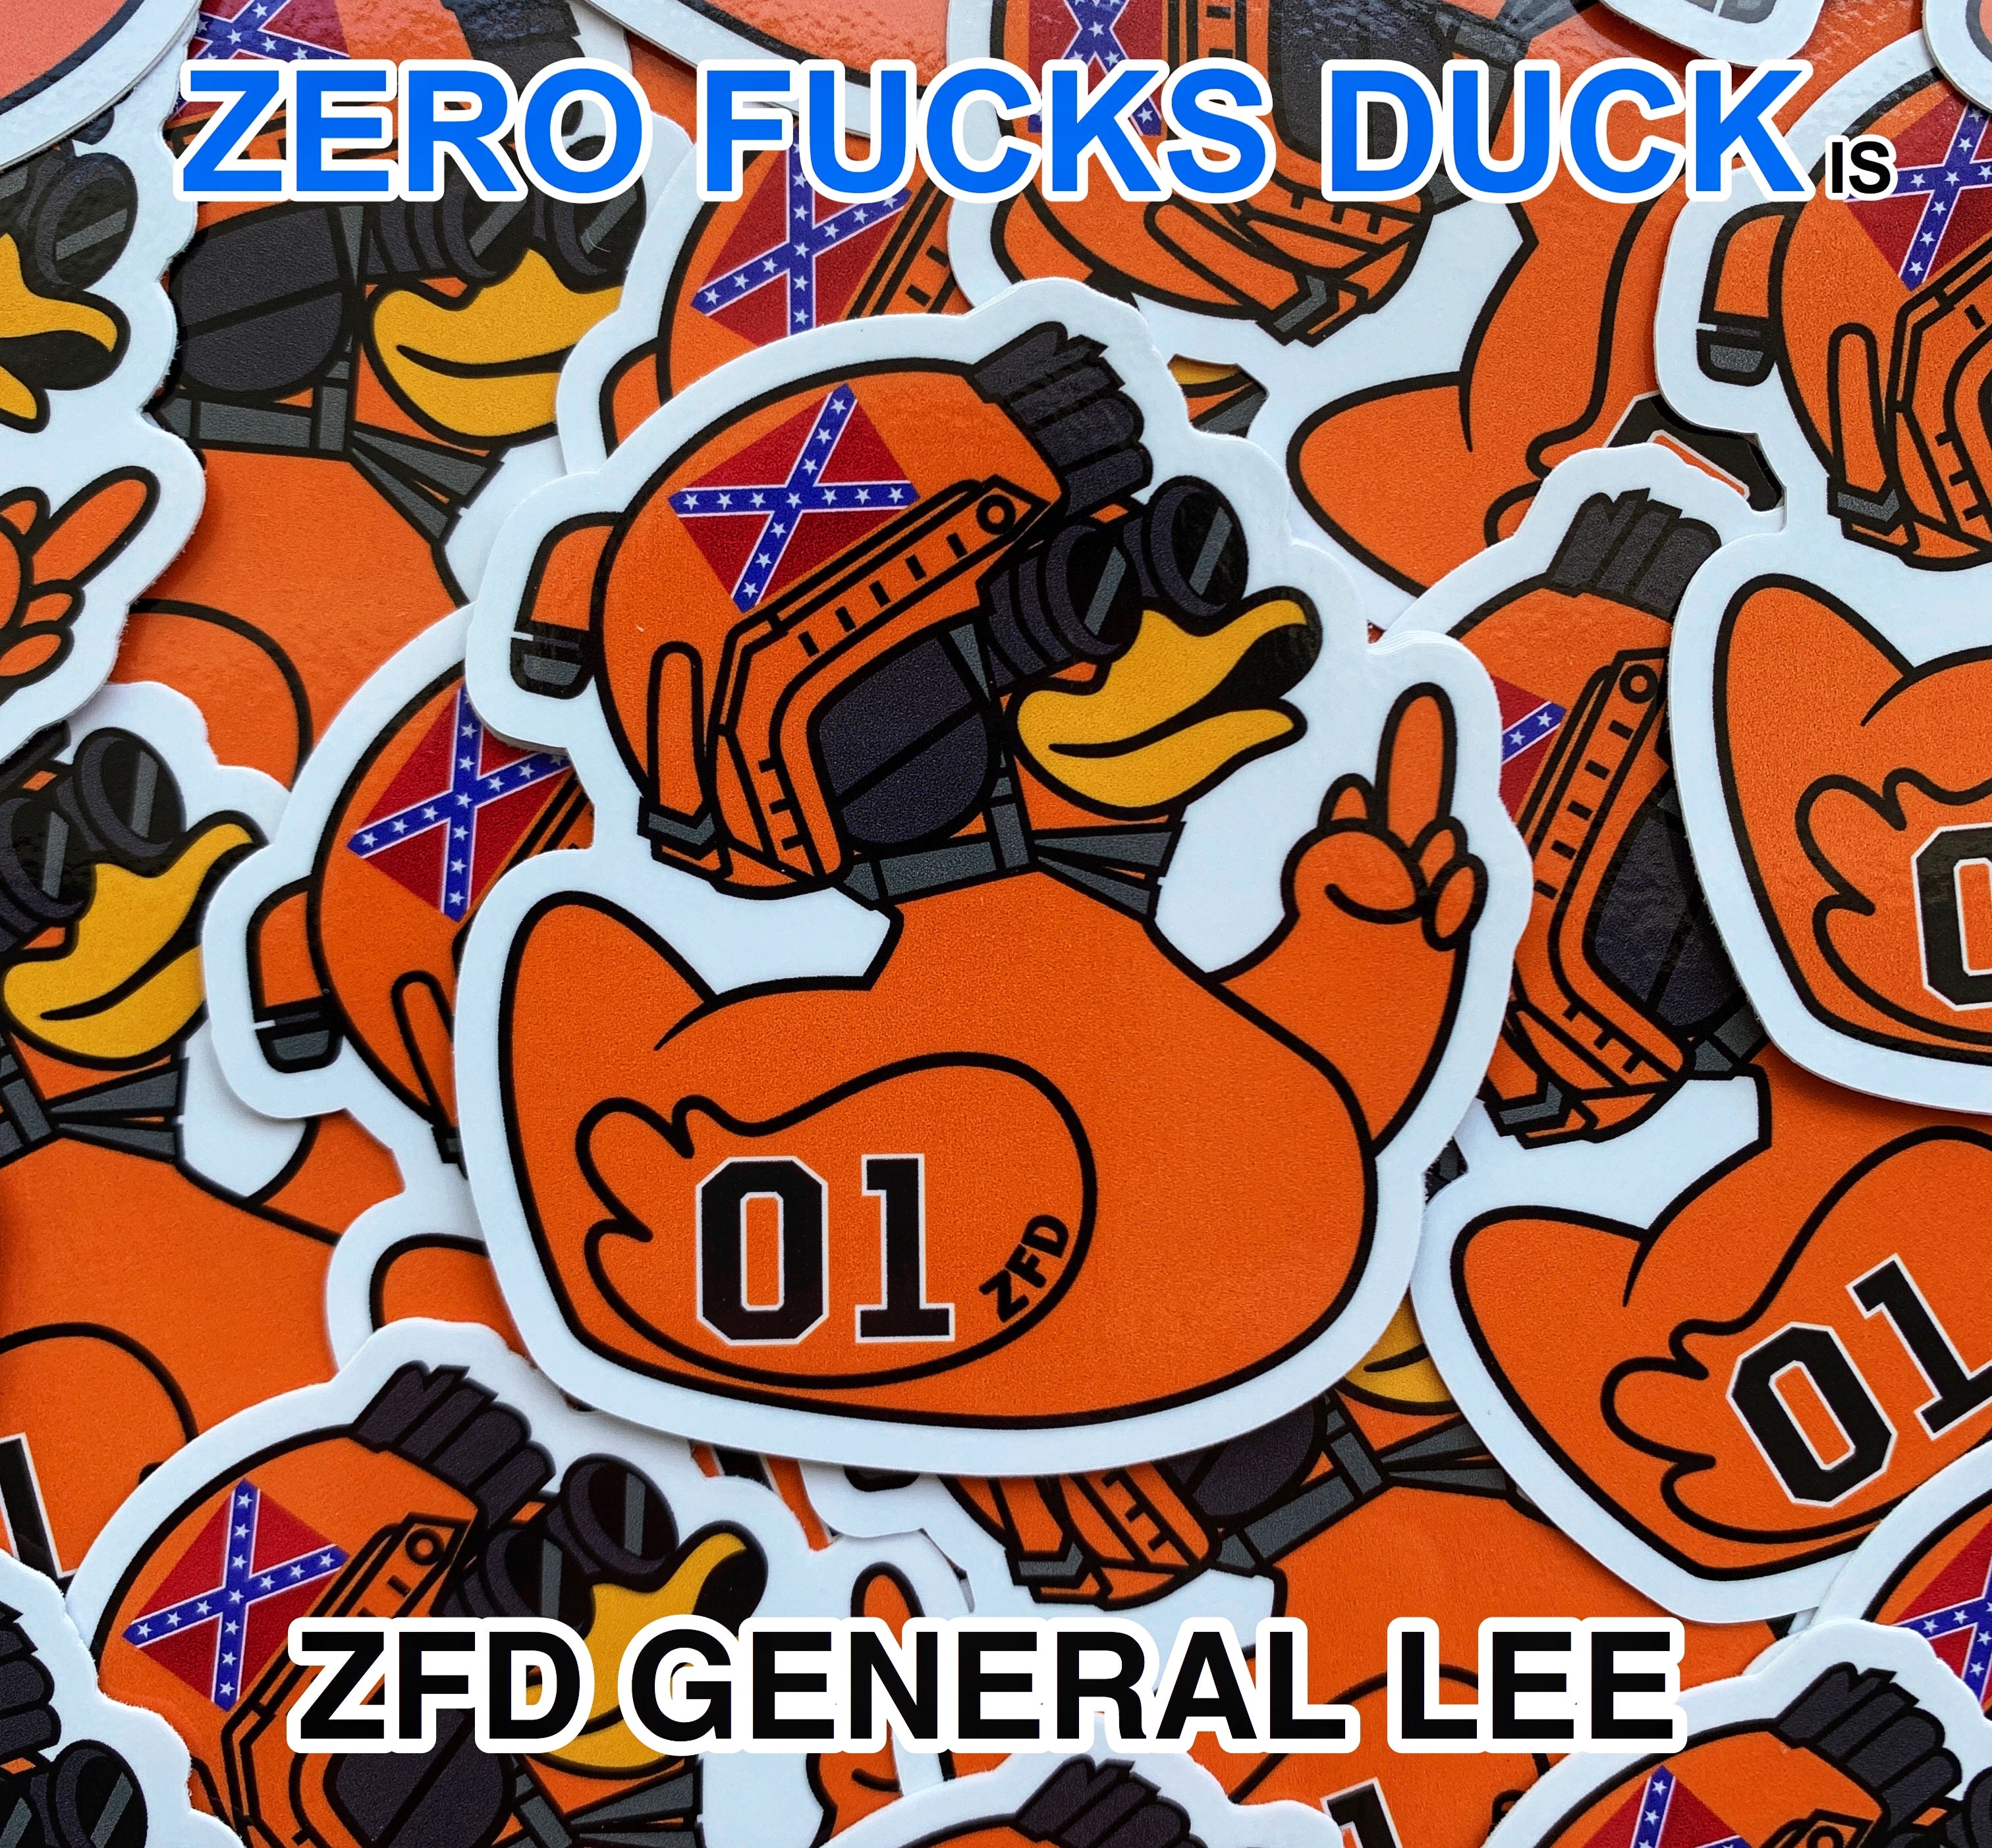 Zero Fucks Duck™ Duke Boys General Lee ZFD Sticker